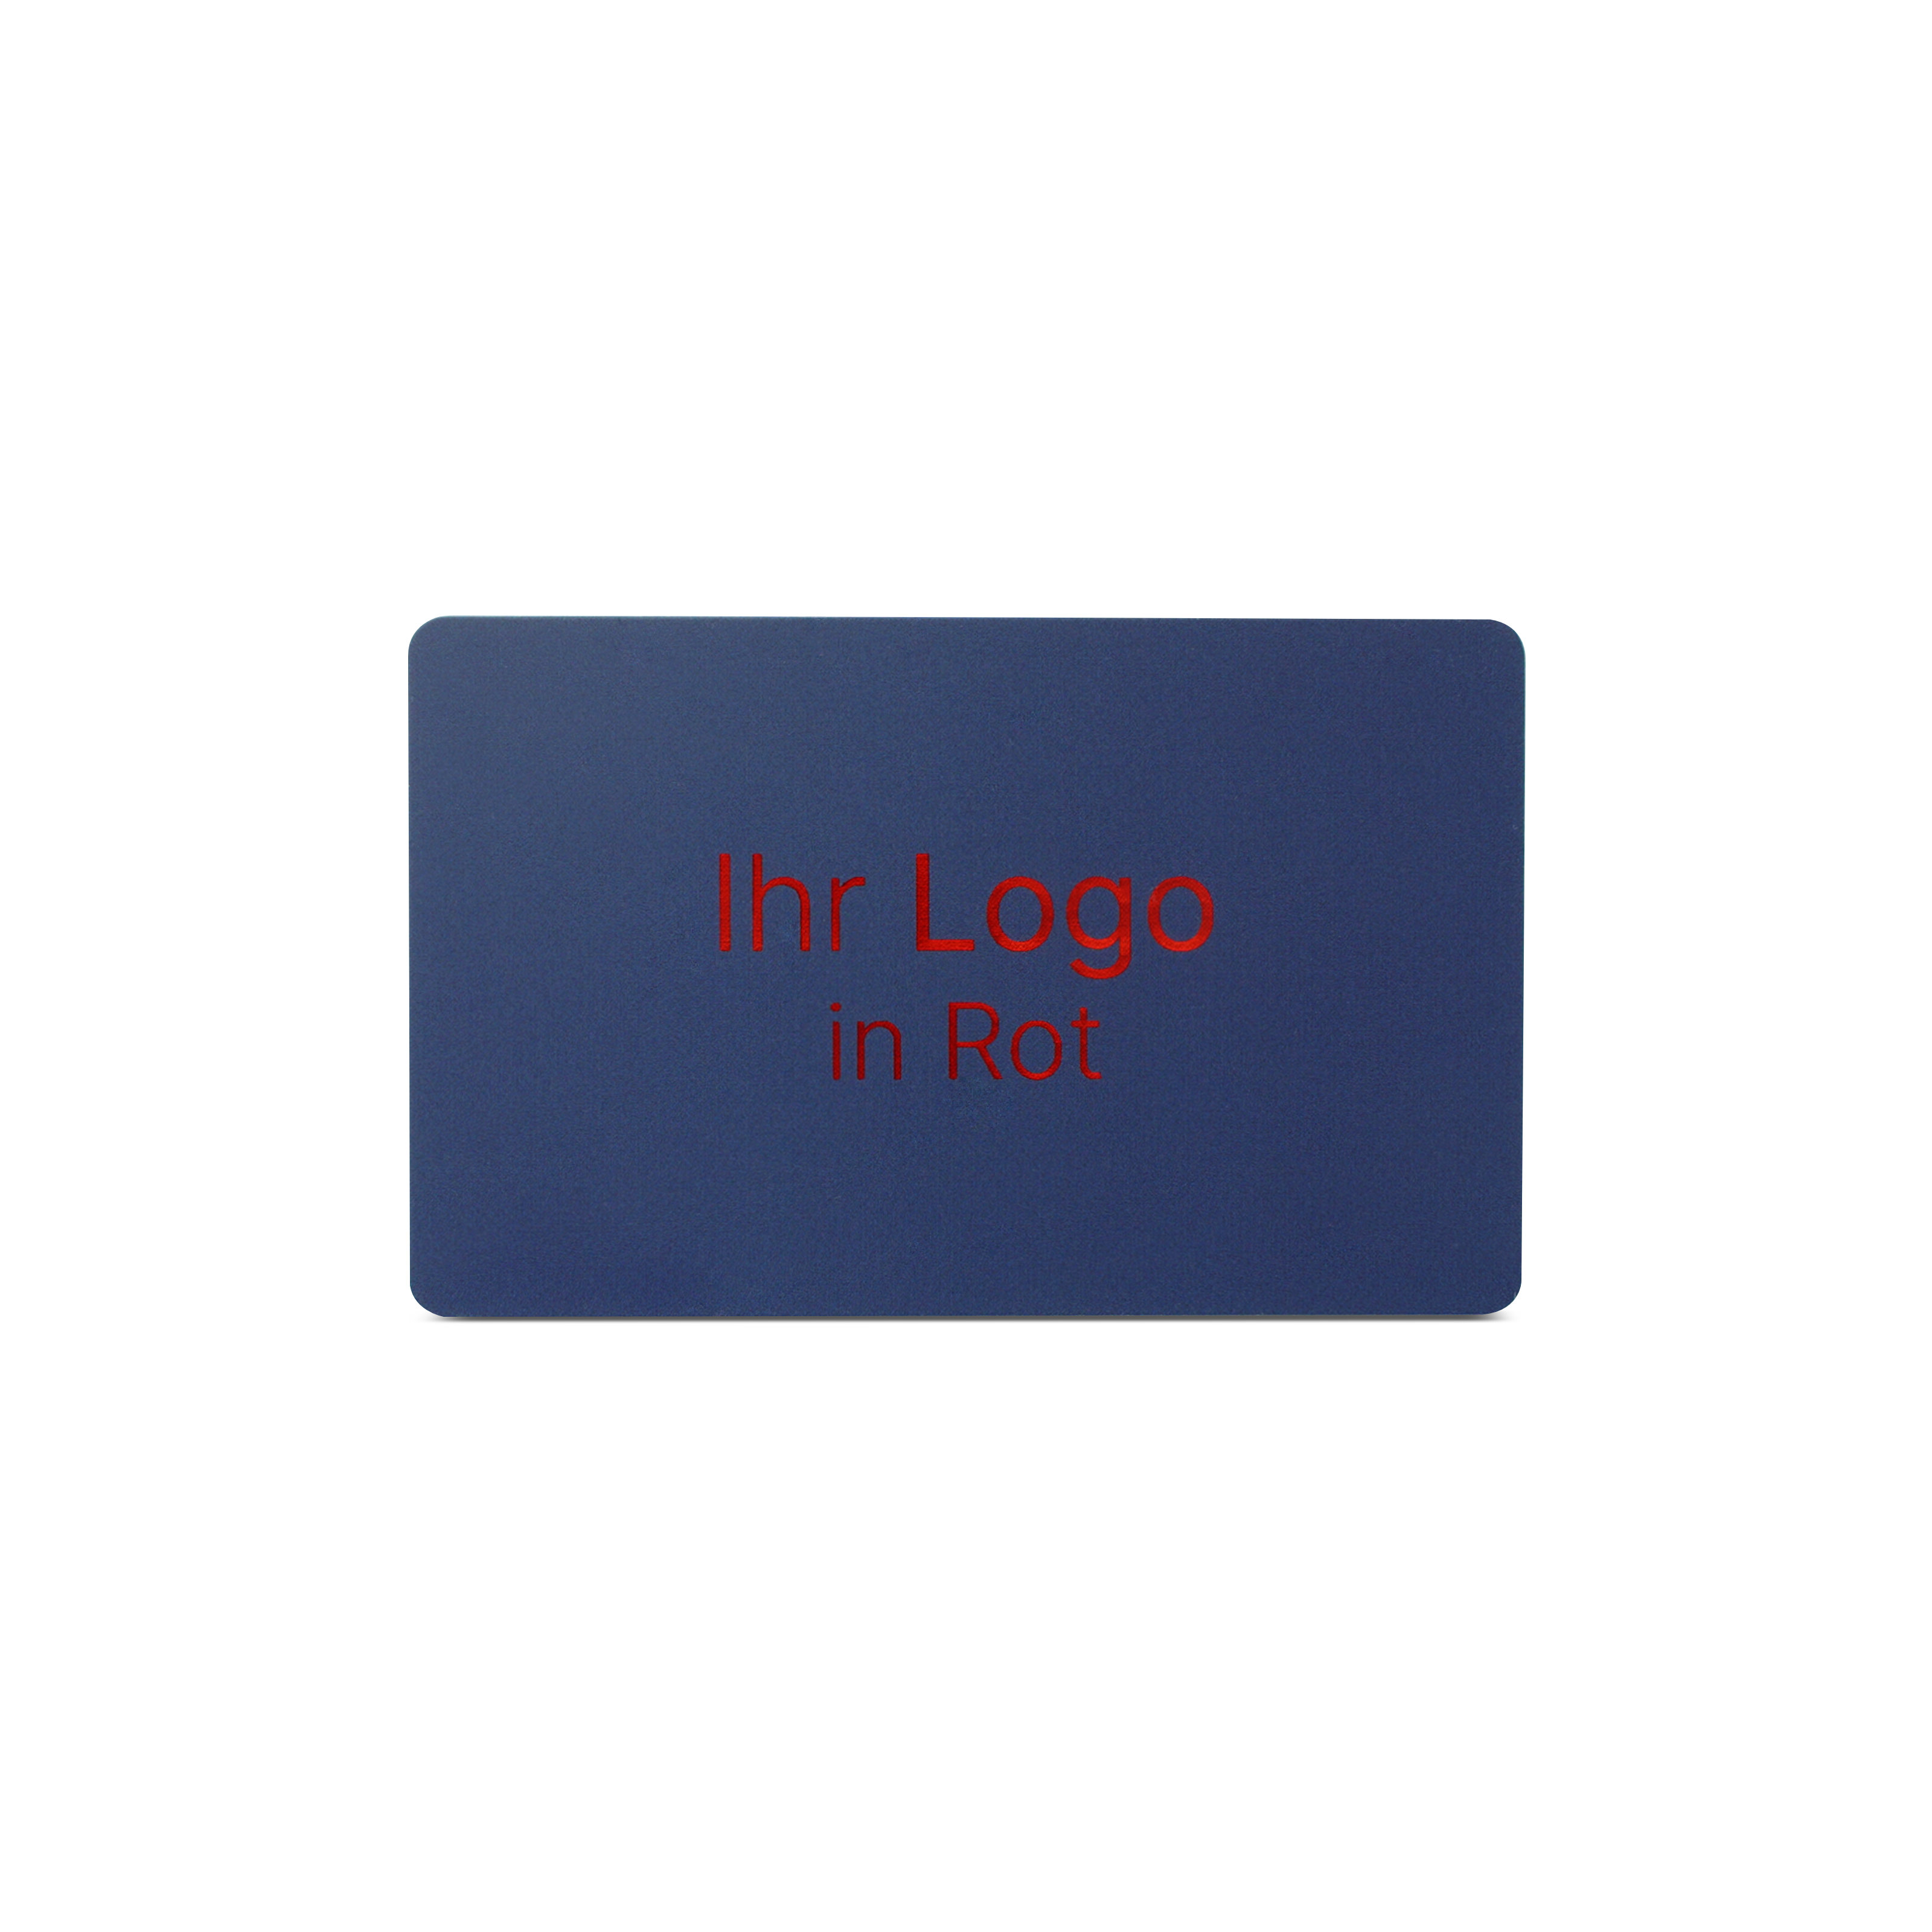 Blaue NFC Karte aus PVC mit Bedruckung "Ihr Logo in Rot"